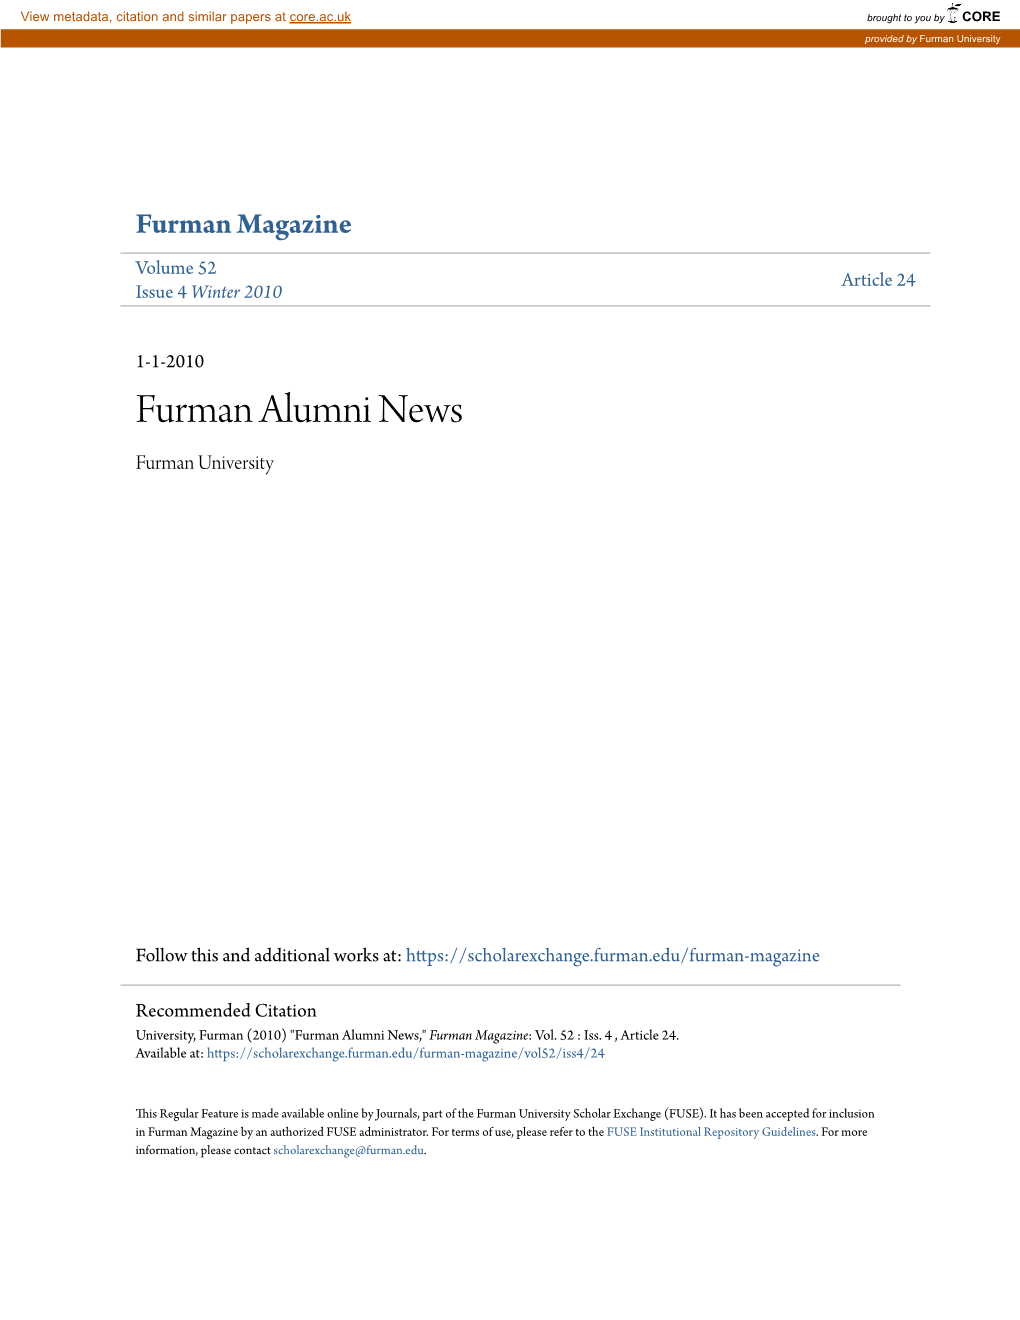 Furman Alumni News Furman University